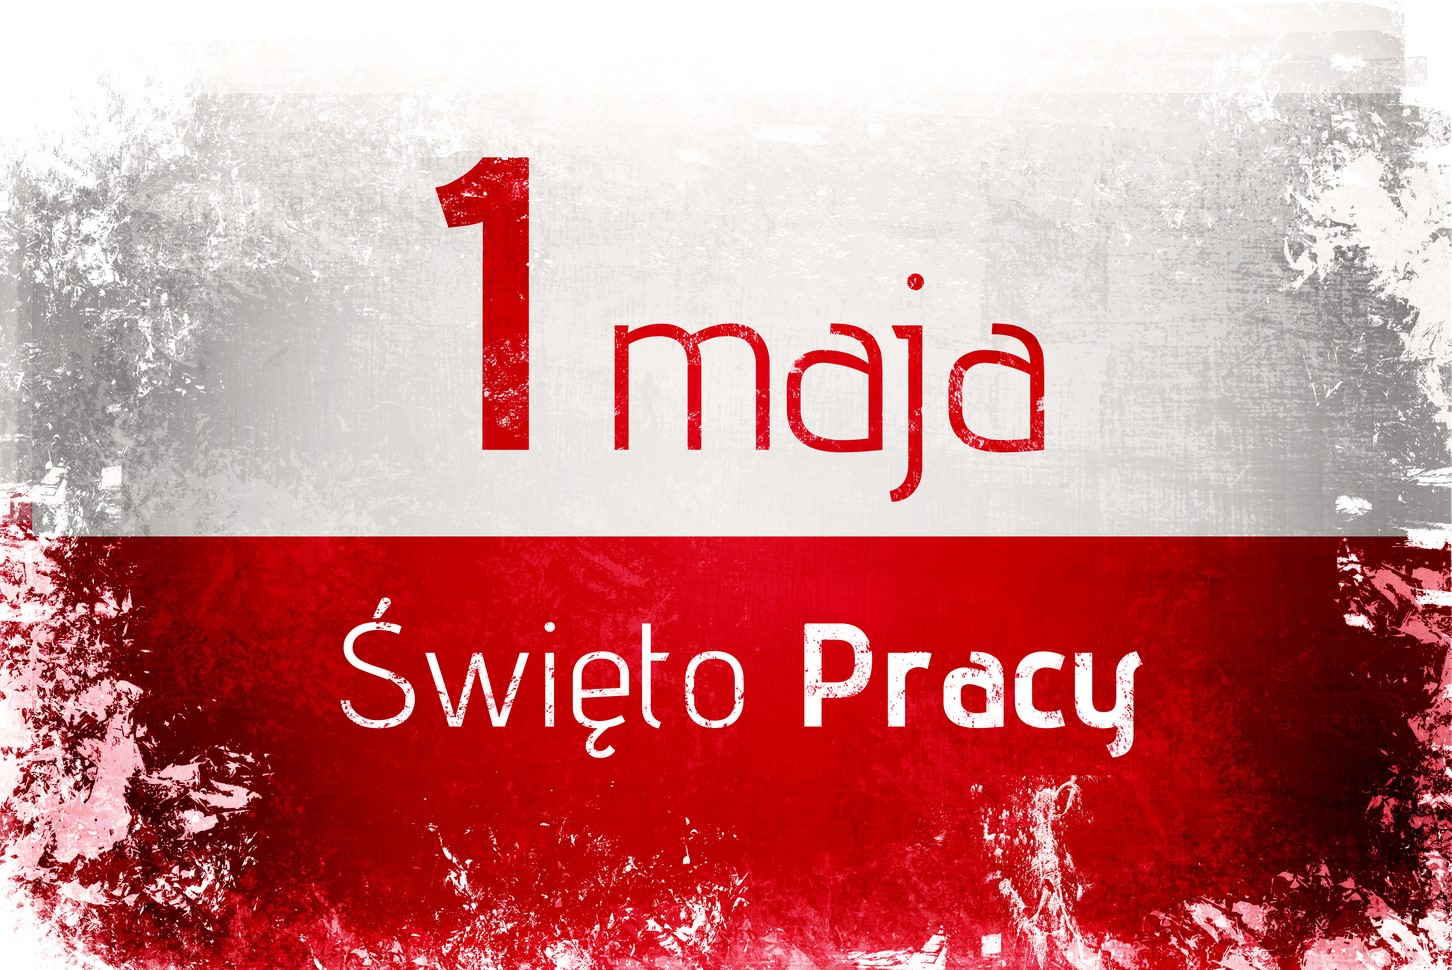 Biało czerwona flaga Polski z napisem